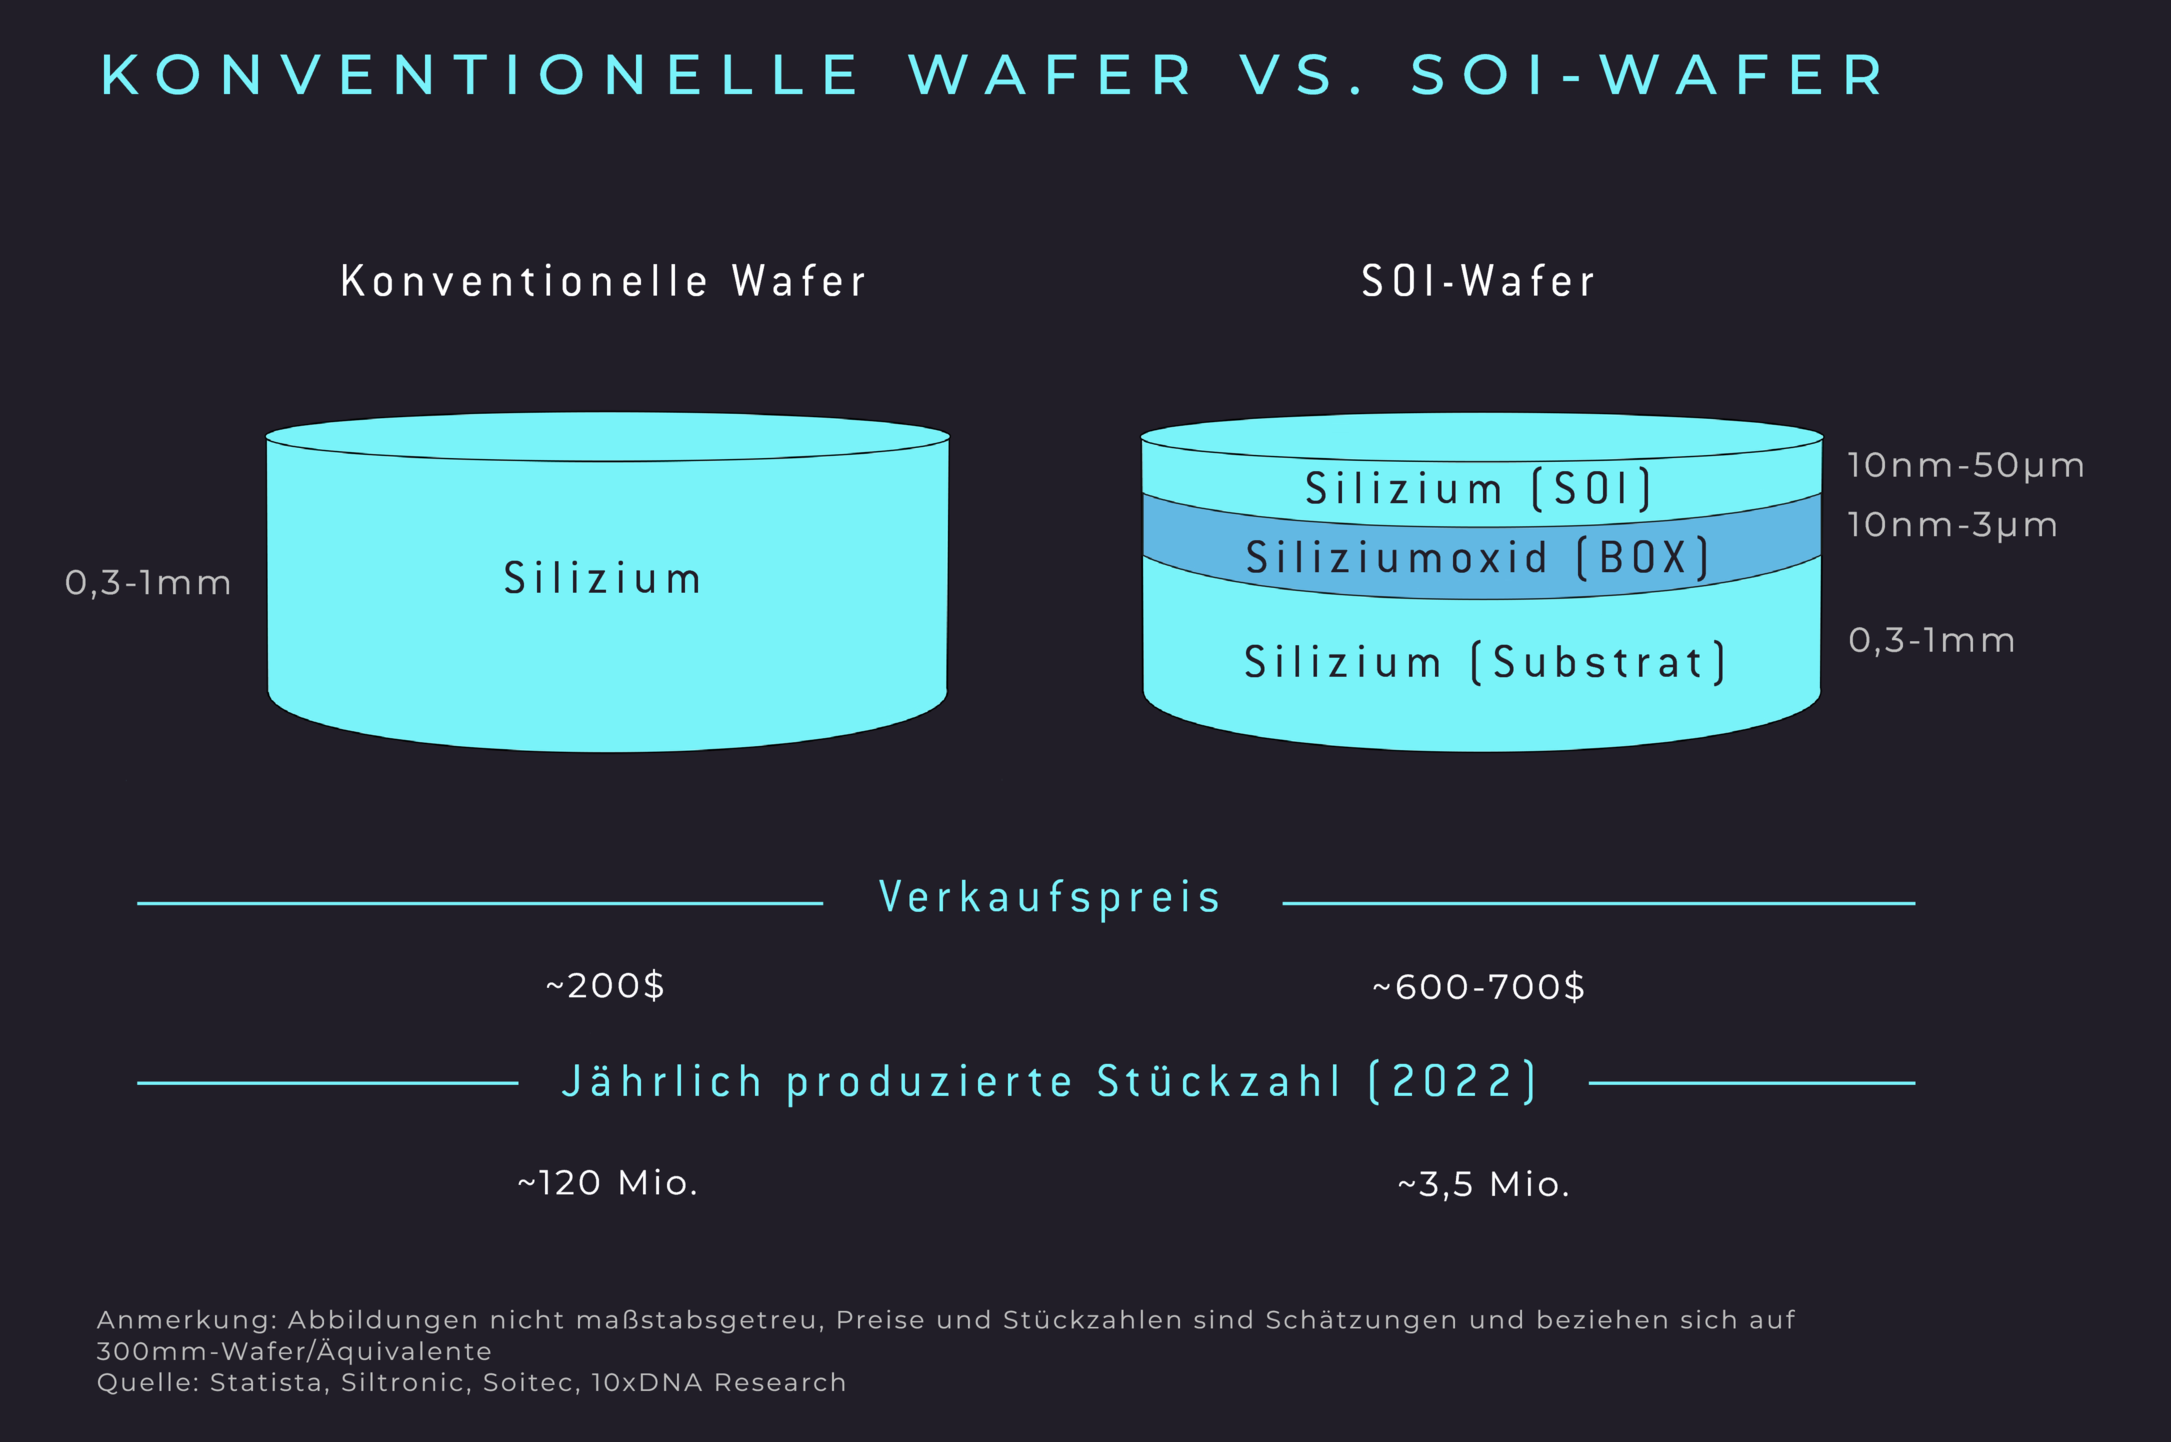 Konventionelle Wafer vs. SOI-Wafer